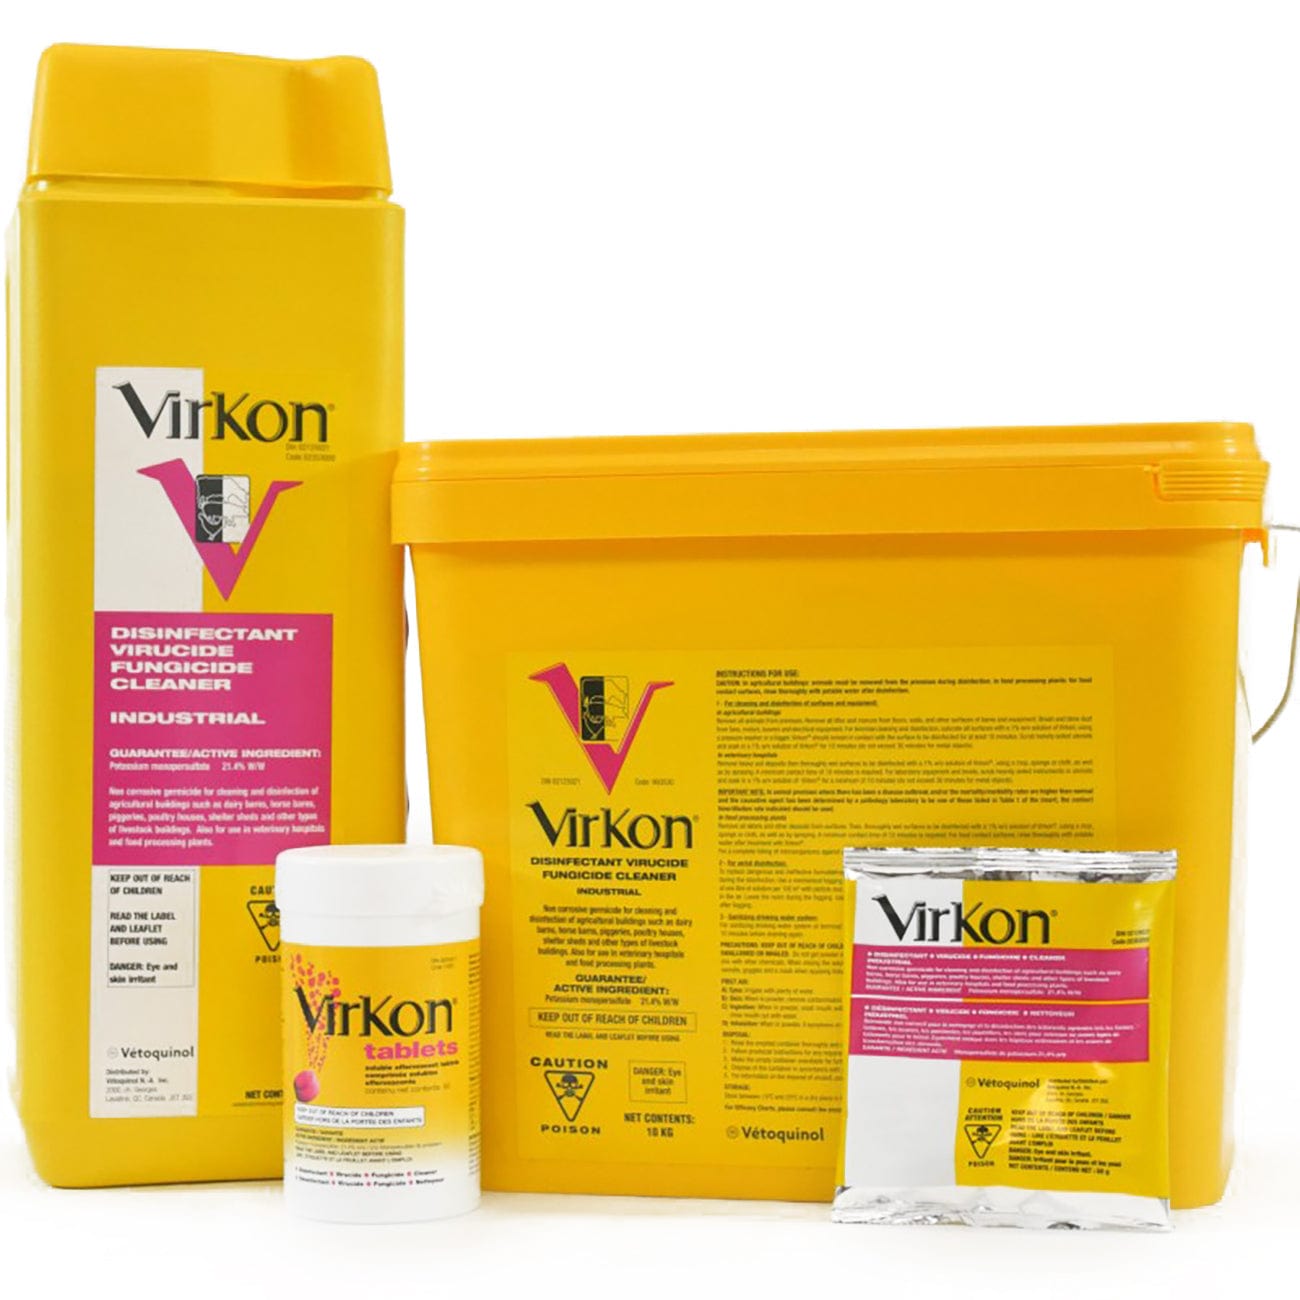 VIRKON S le désinfectant en poudre bactéricide fongicide et virucide